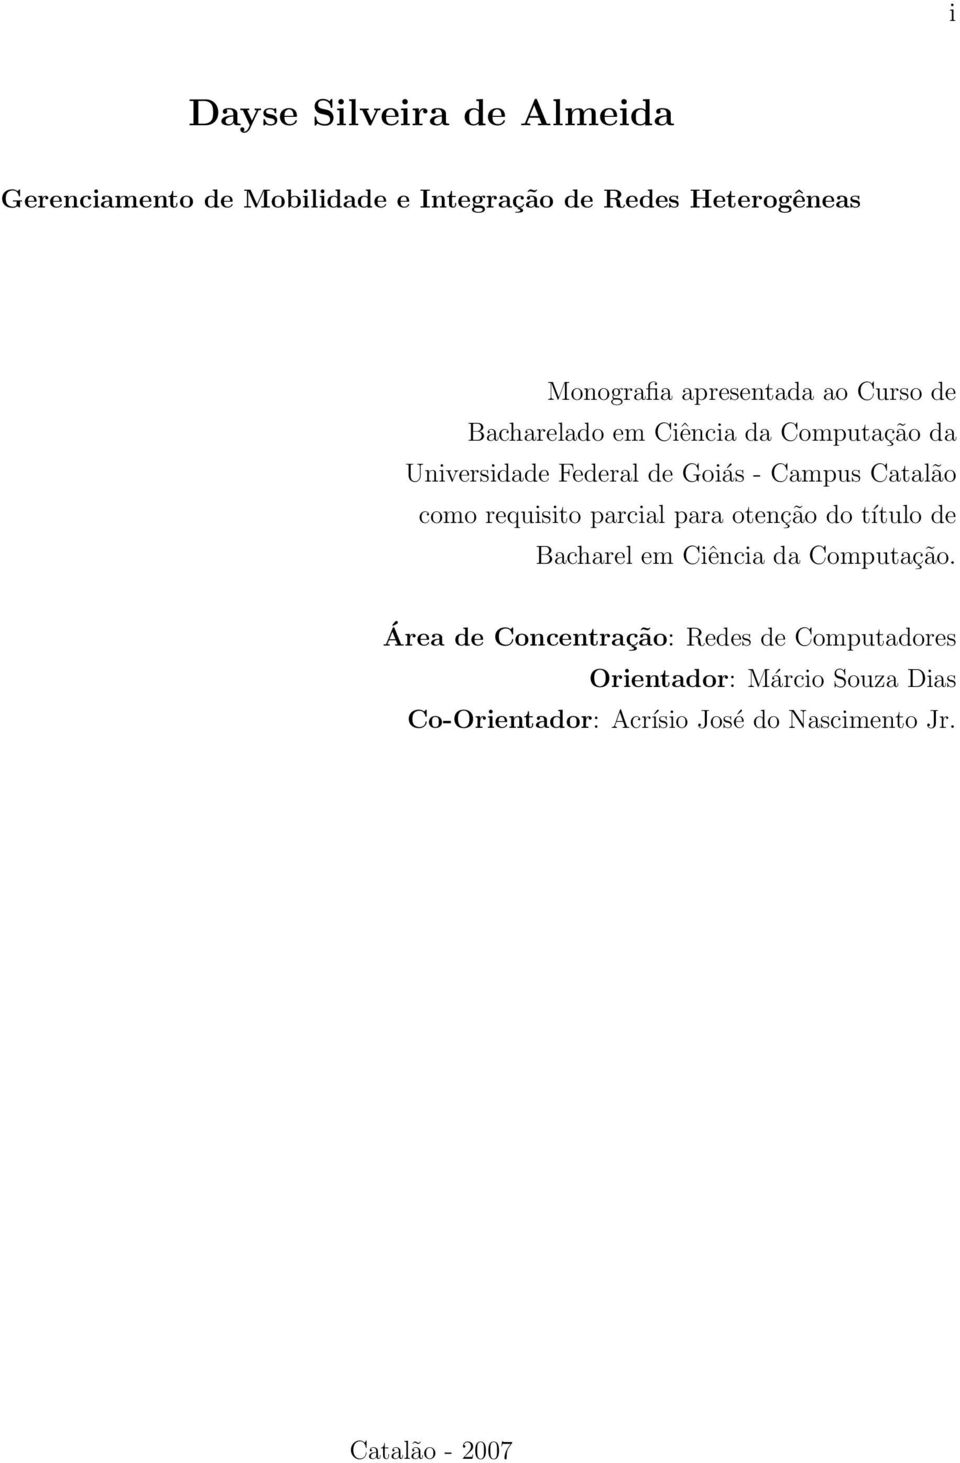 Catalão como requisito parcial para otenção do título de Bacharel em Ciência da Computação.